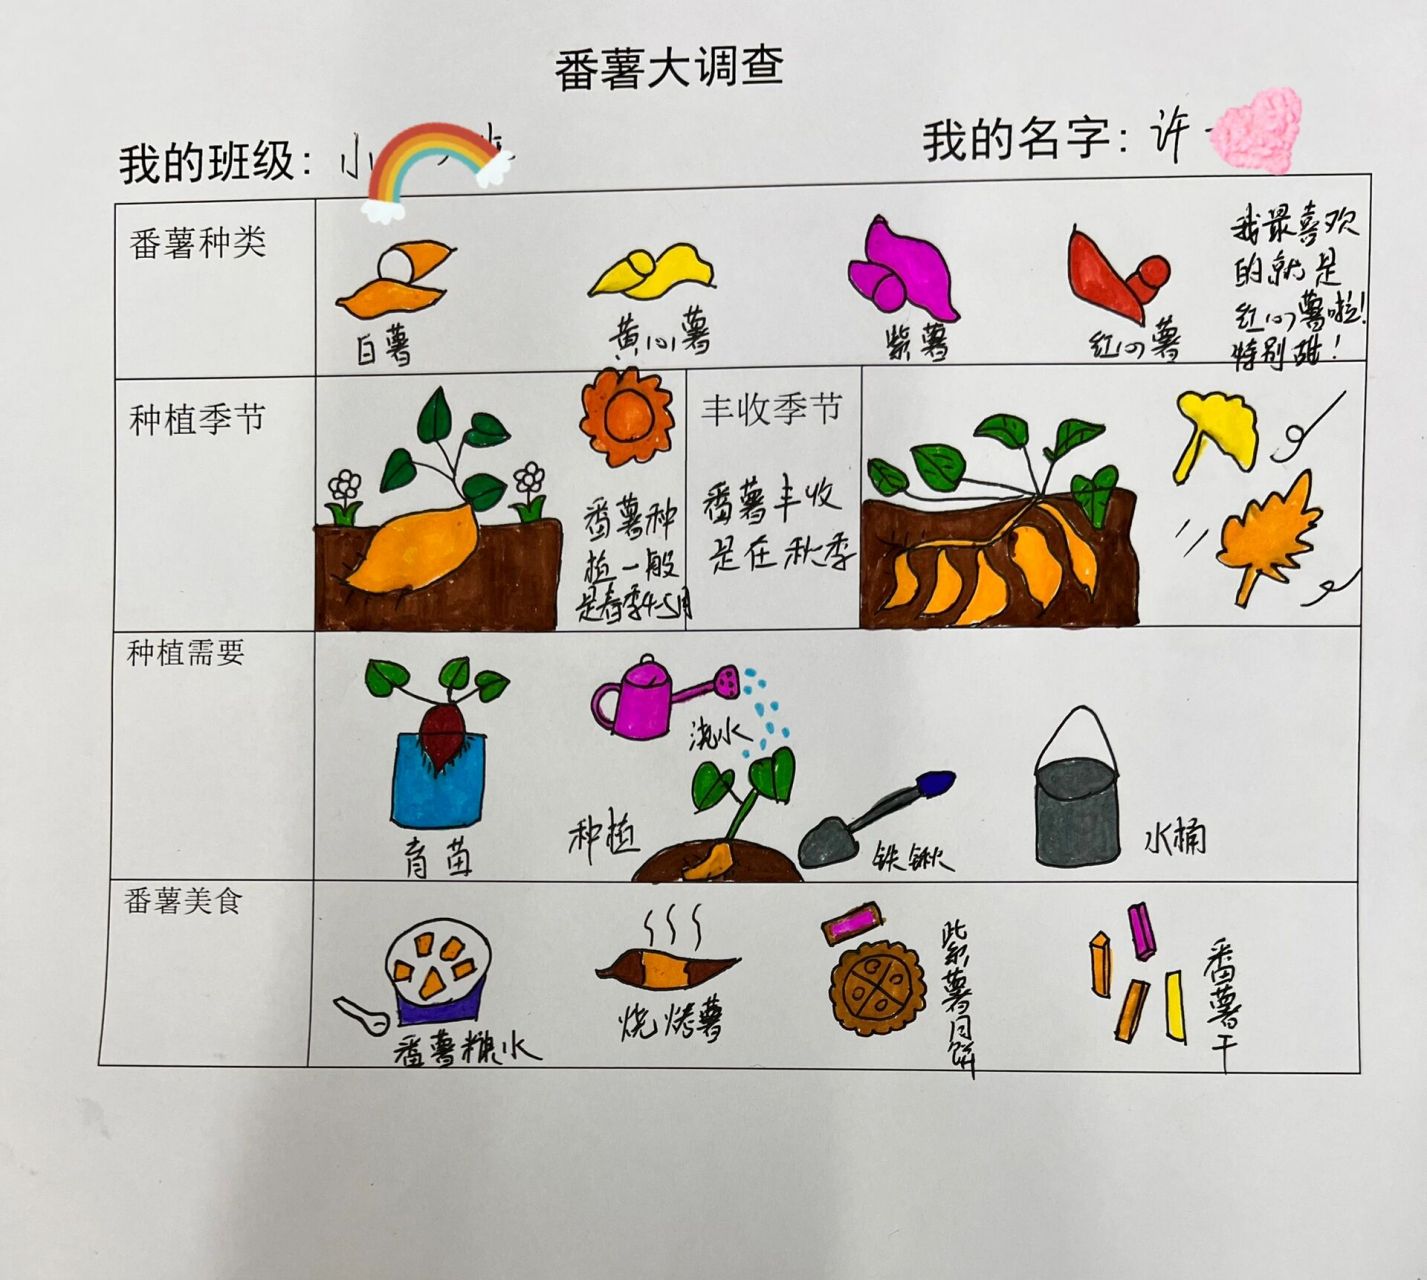 番薯种类及图片幼儿园图片